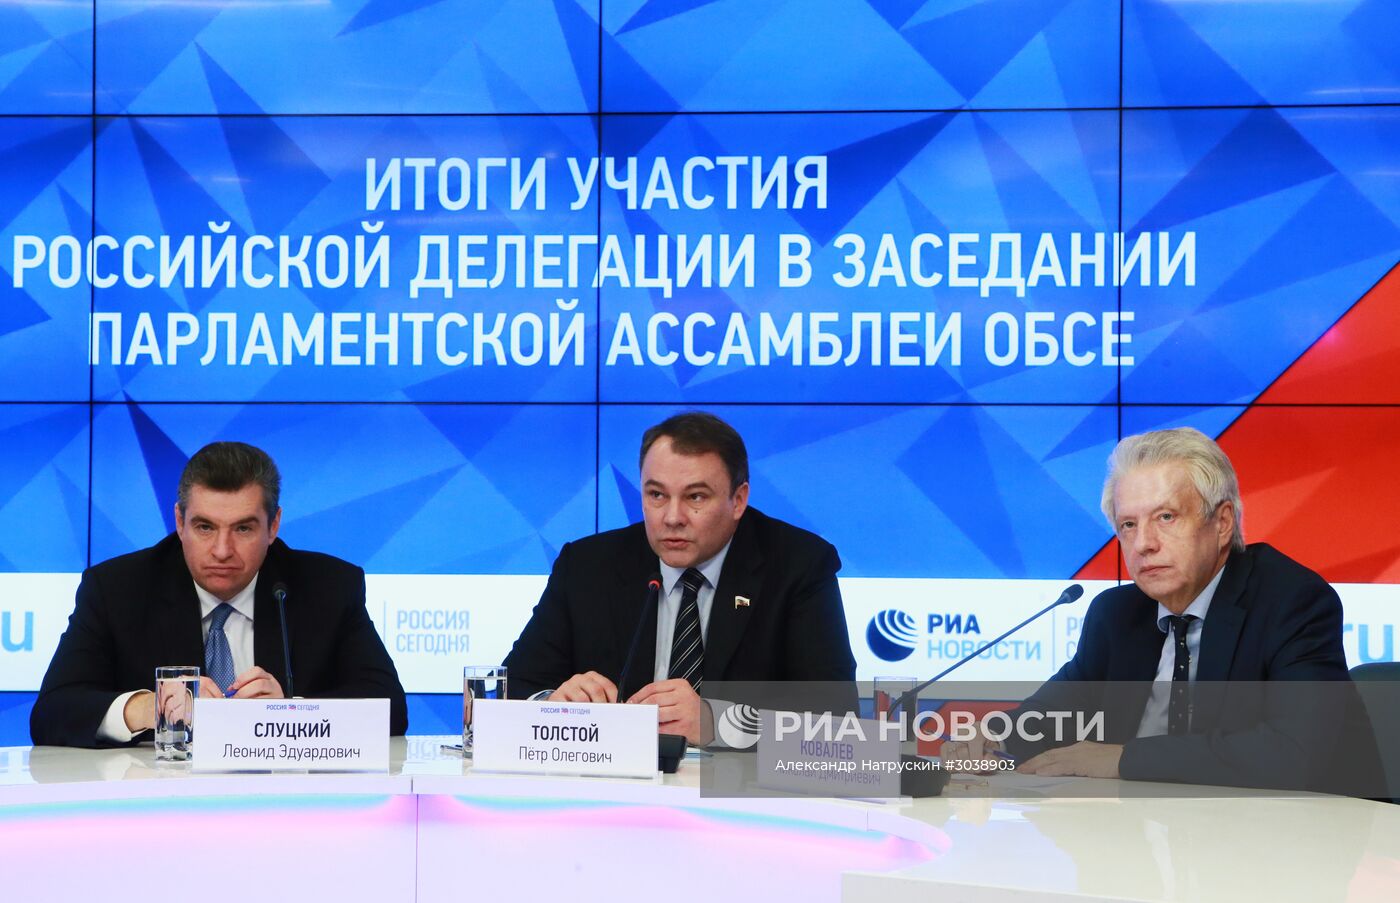 Пресс-конференция по итогам участия российской делегации в заседании Парламентской ассамблеи ОБСЕ